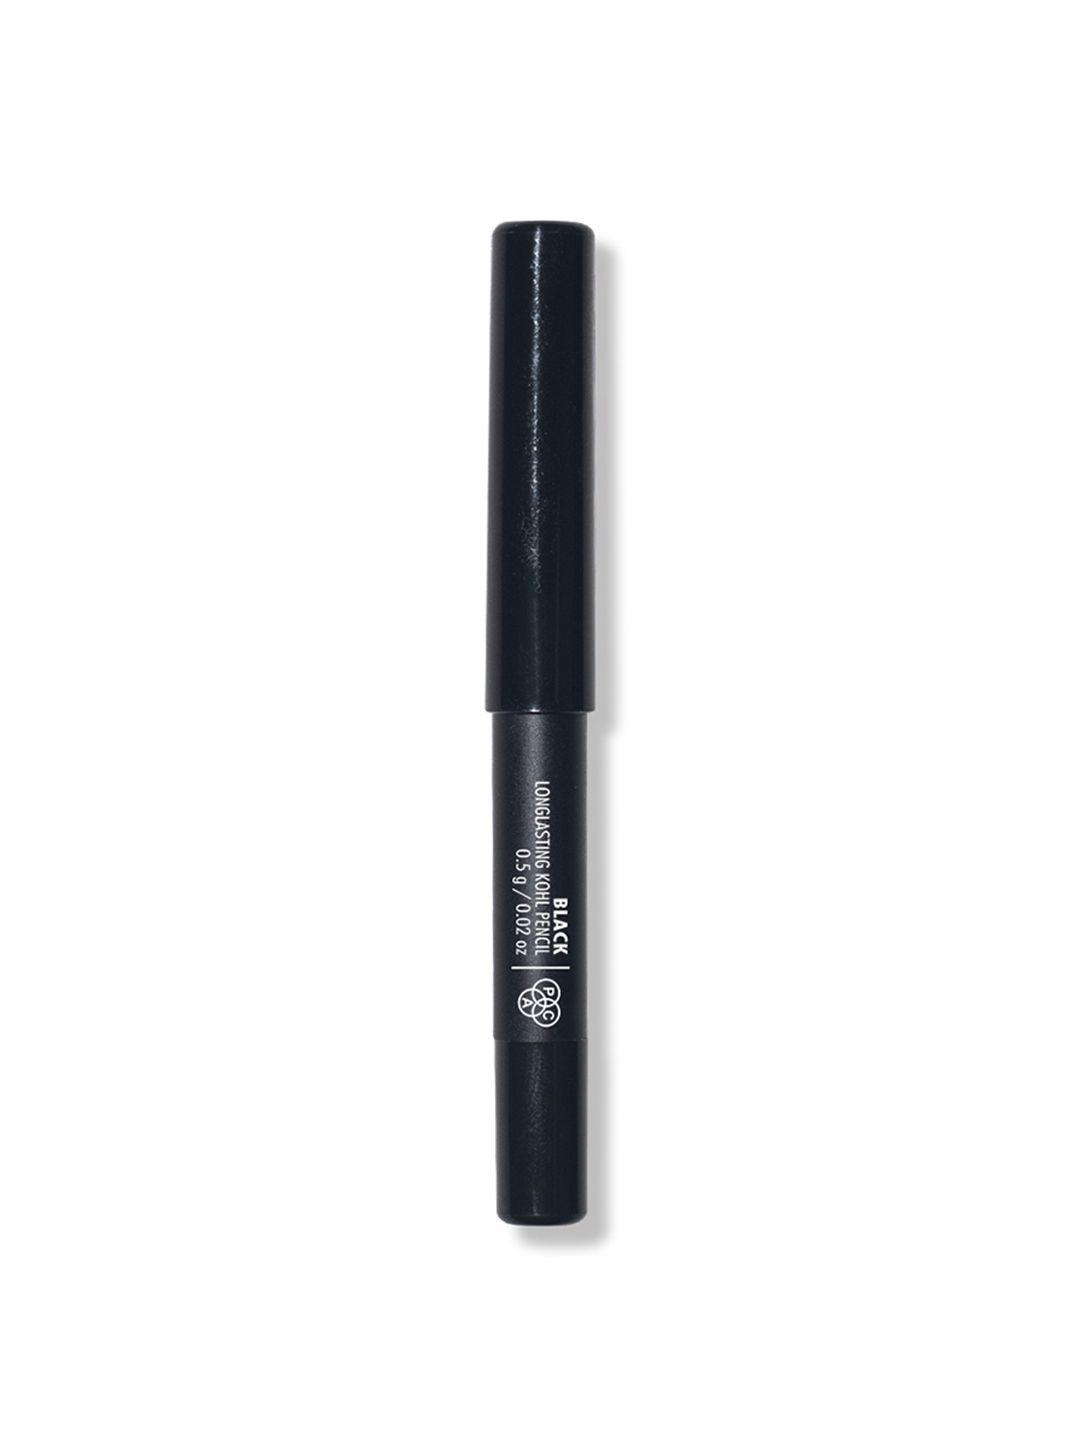 pac longlasting kohl pencil ultra-pigmented mini kajal - black